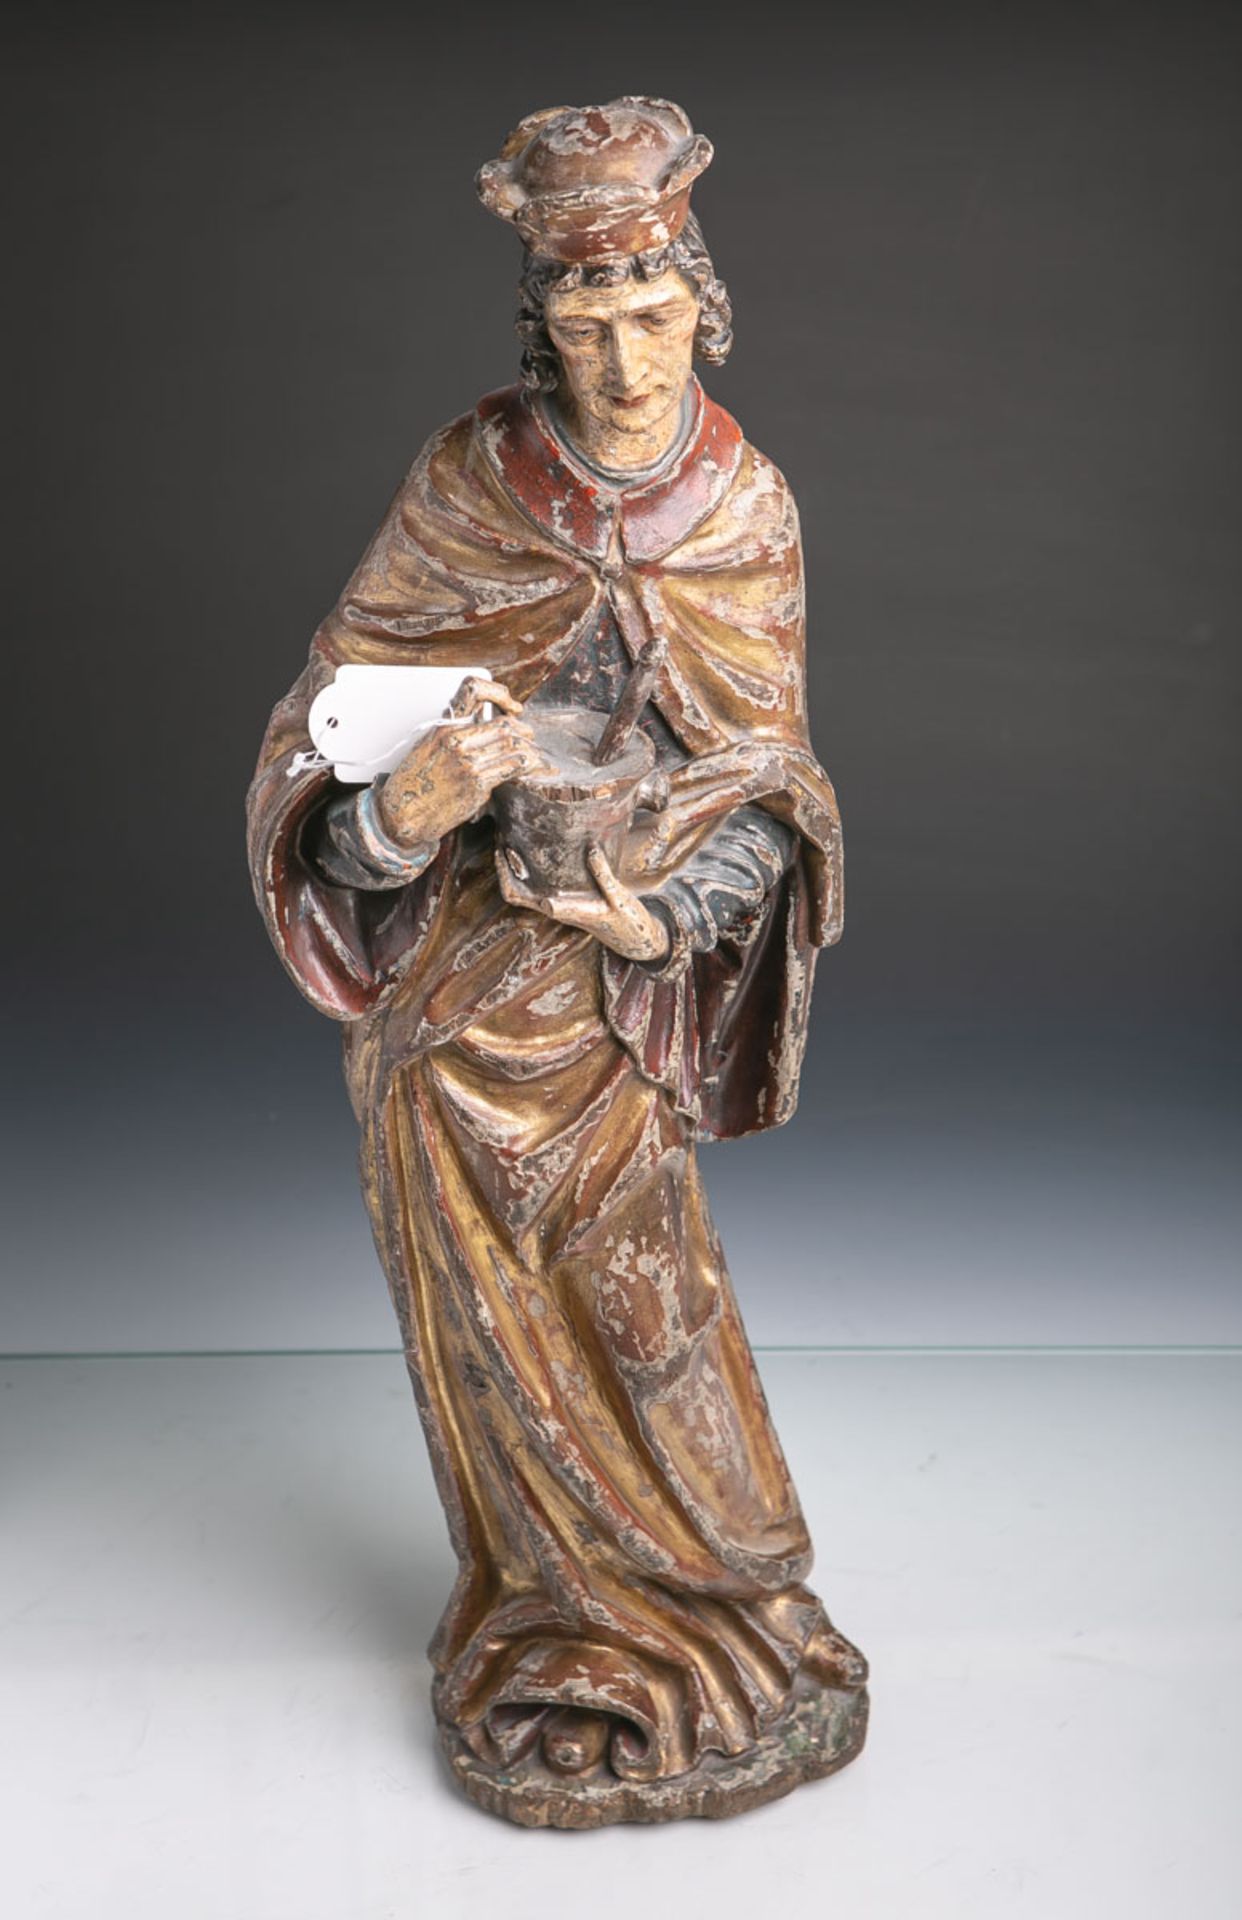 Unbekannter Künstler (wohl 17./18. Jahrhundert), Darstellung des Heiligen Kosmas,